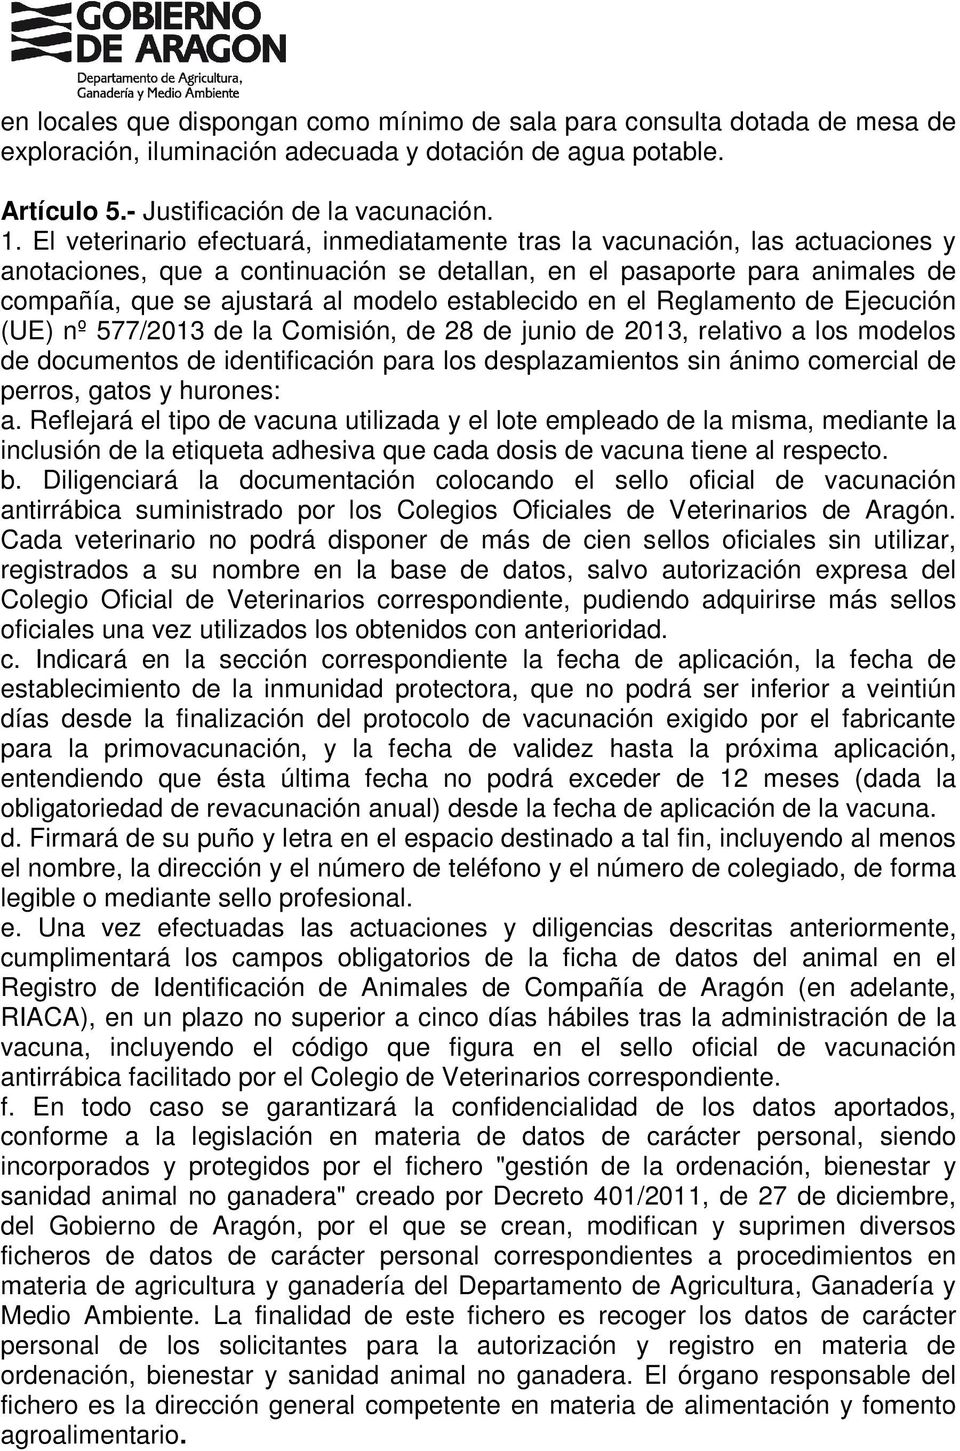 establecido en el Reglamento de Ejecución (UE) nº 577/2013 de la Comisión, de 28 de junio de 2013, relativo a los modelos de documentos de identificación para los desplazamientos sin ánimo comercial